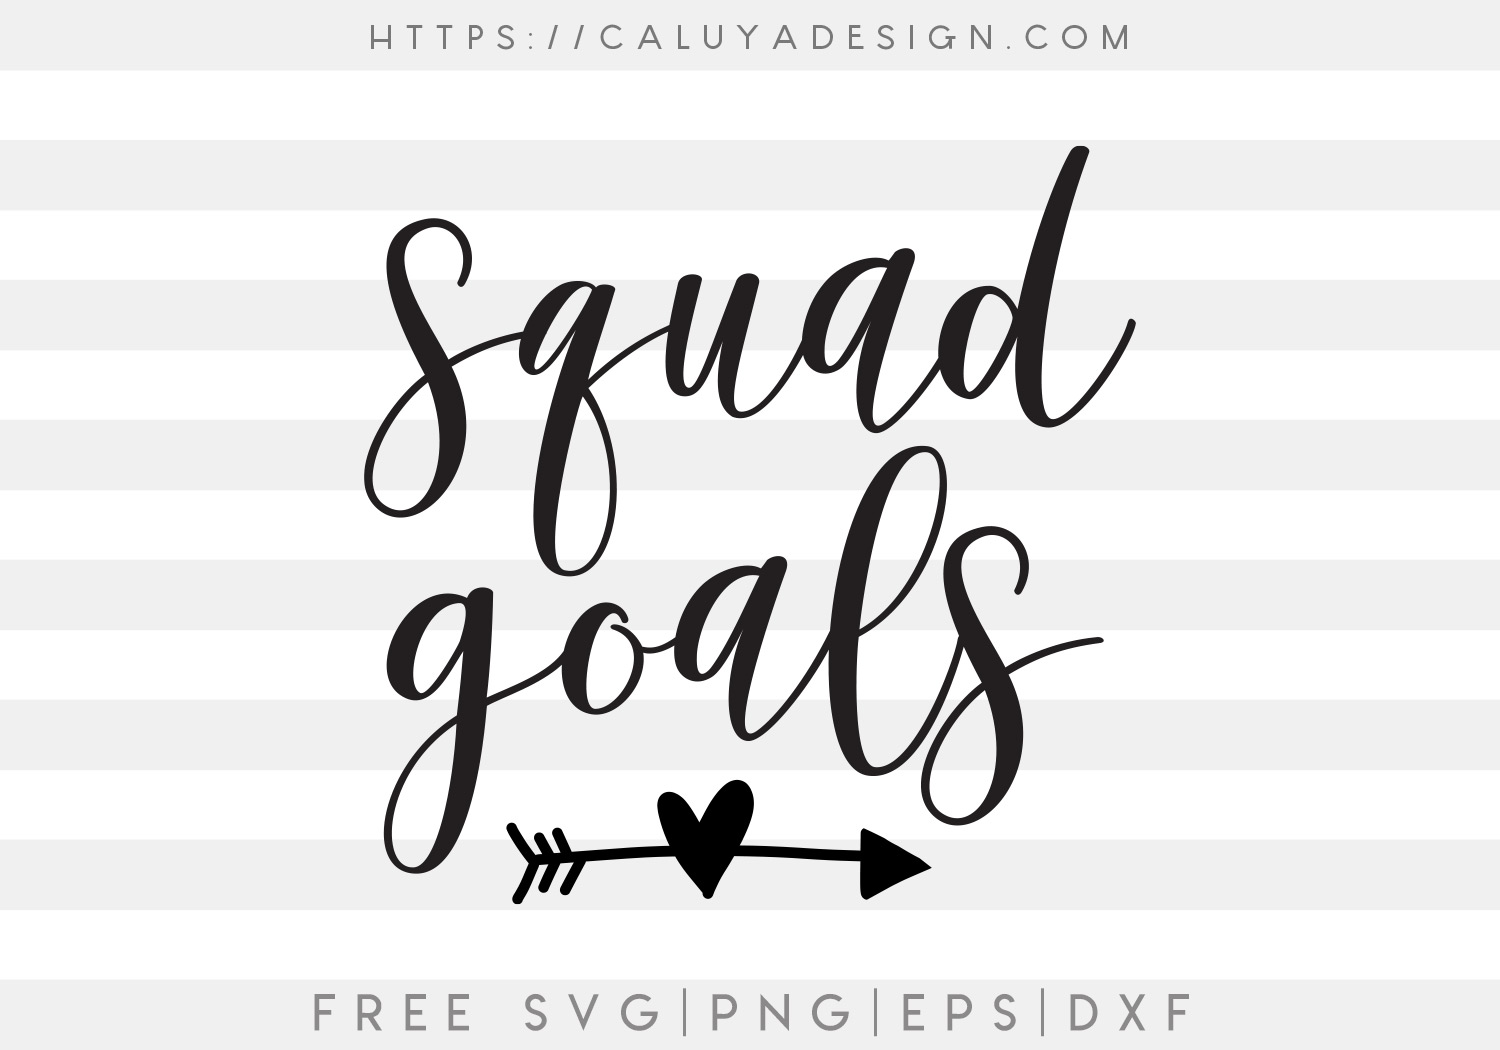 Squad Goals SVG, PNG, EPS & DXF